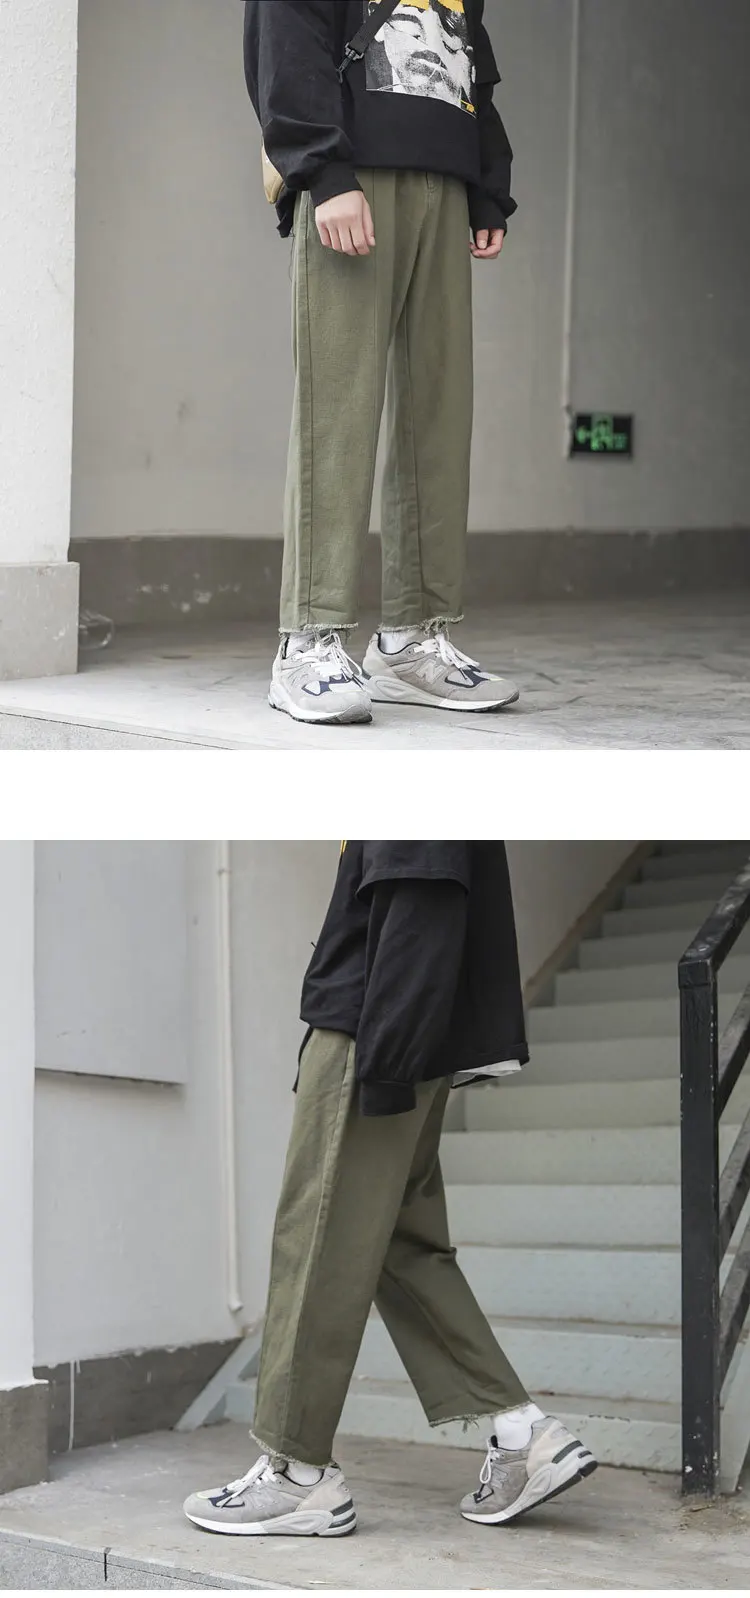 2019 мужские модные повседневные брюки мешковатые мужские джинсы с накладной карман белые/зеленые/черные/хаки брюки байкерские джинсовые